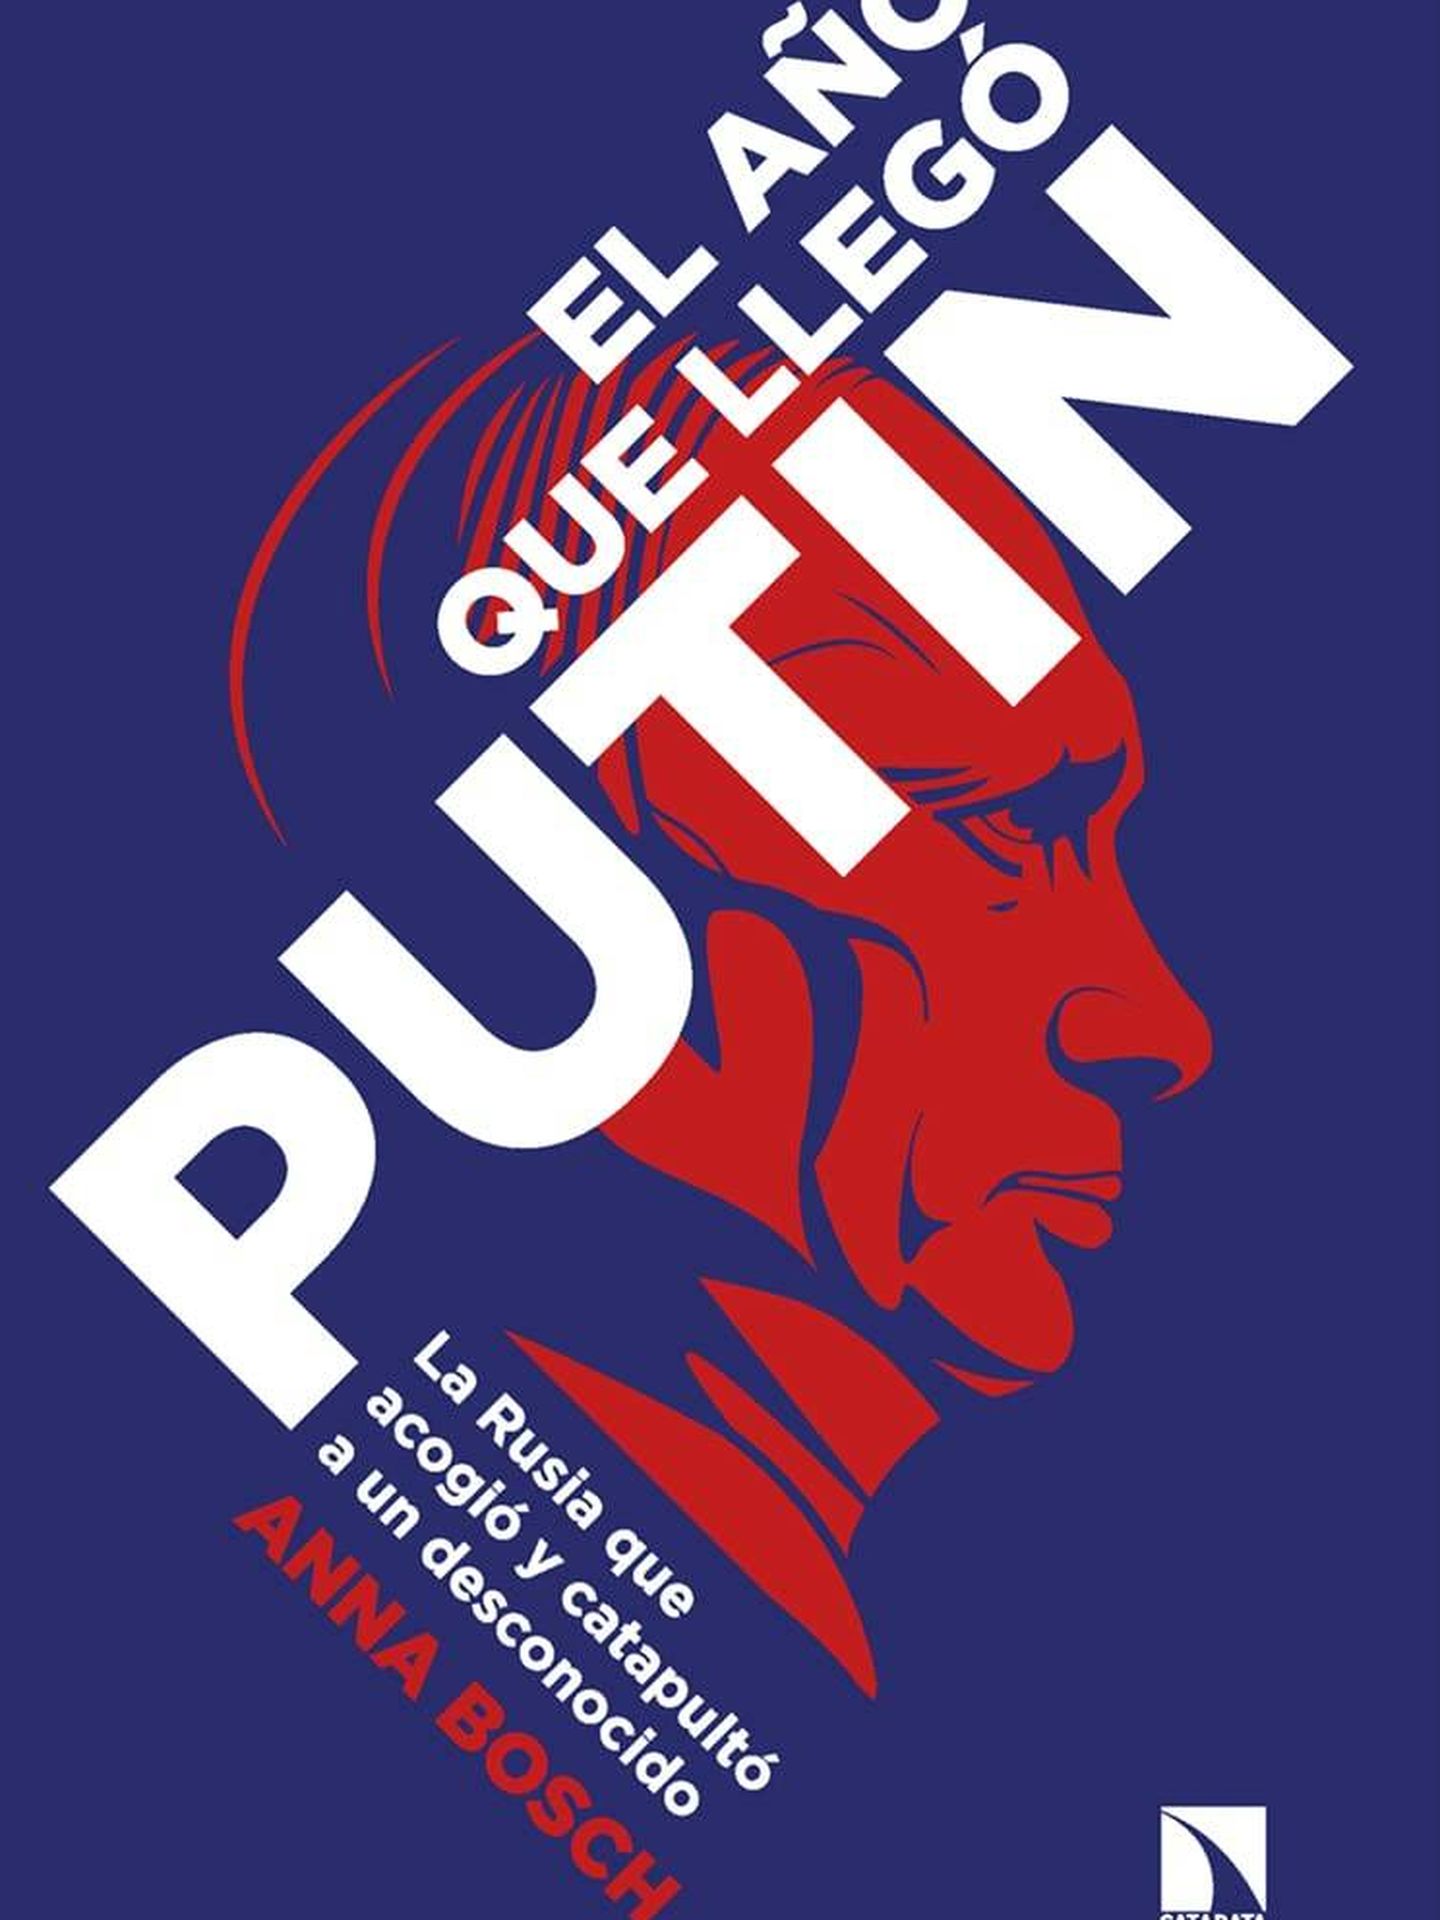 Portada del libro 'El año que llegó Putin', de la periodista Anna Bosch.